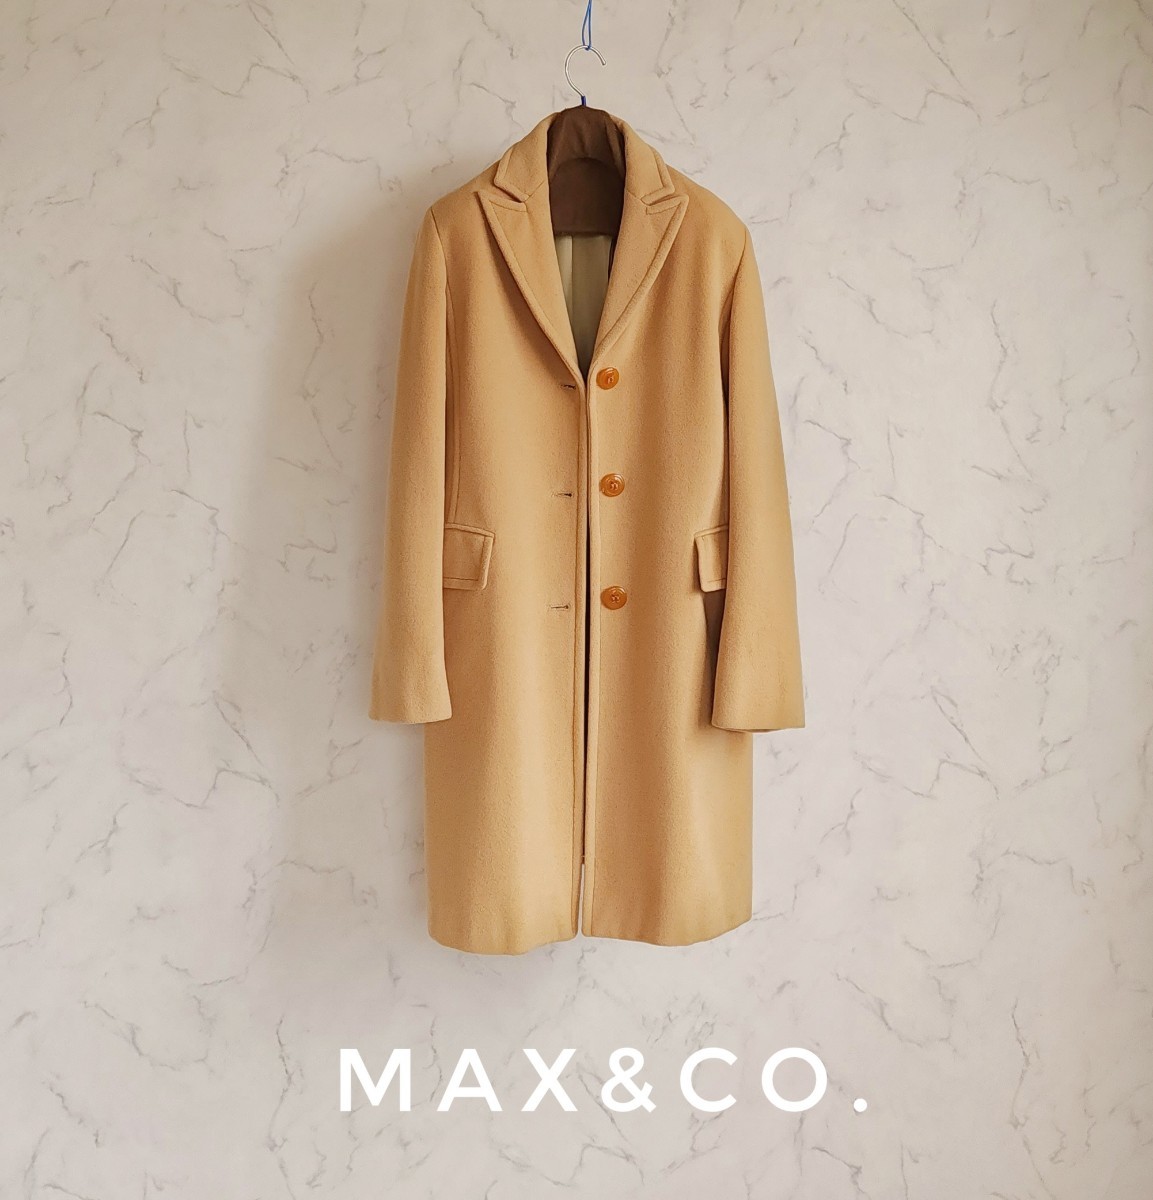 超高級 Maxmara 一級品イタリア製モダンチェスターコート シンプルデザイン max&co. マックスマーラ マックスアンドコー _画像1